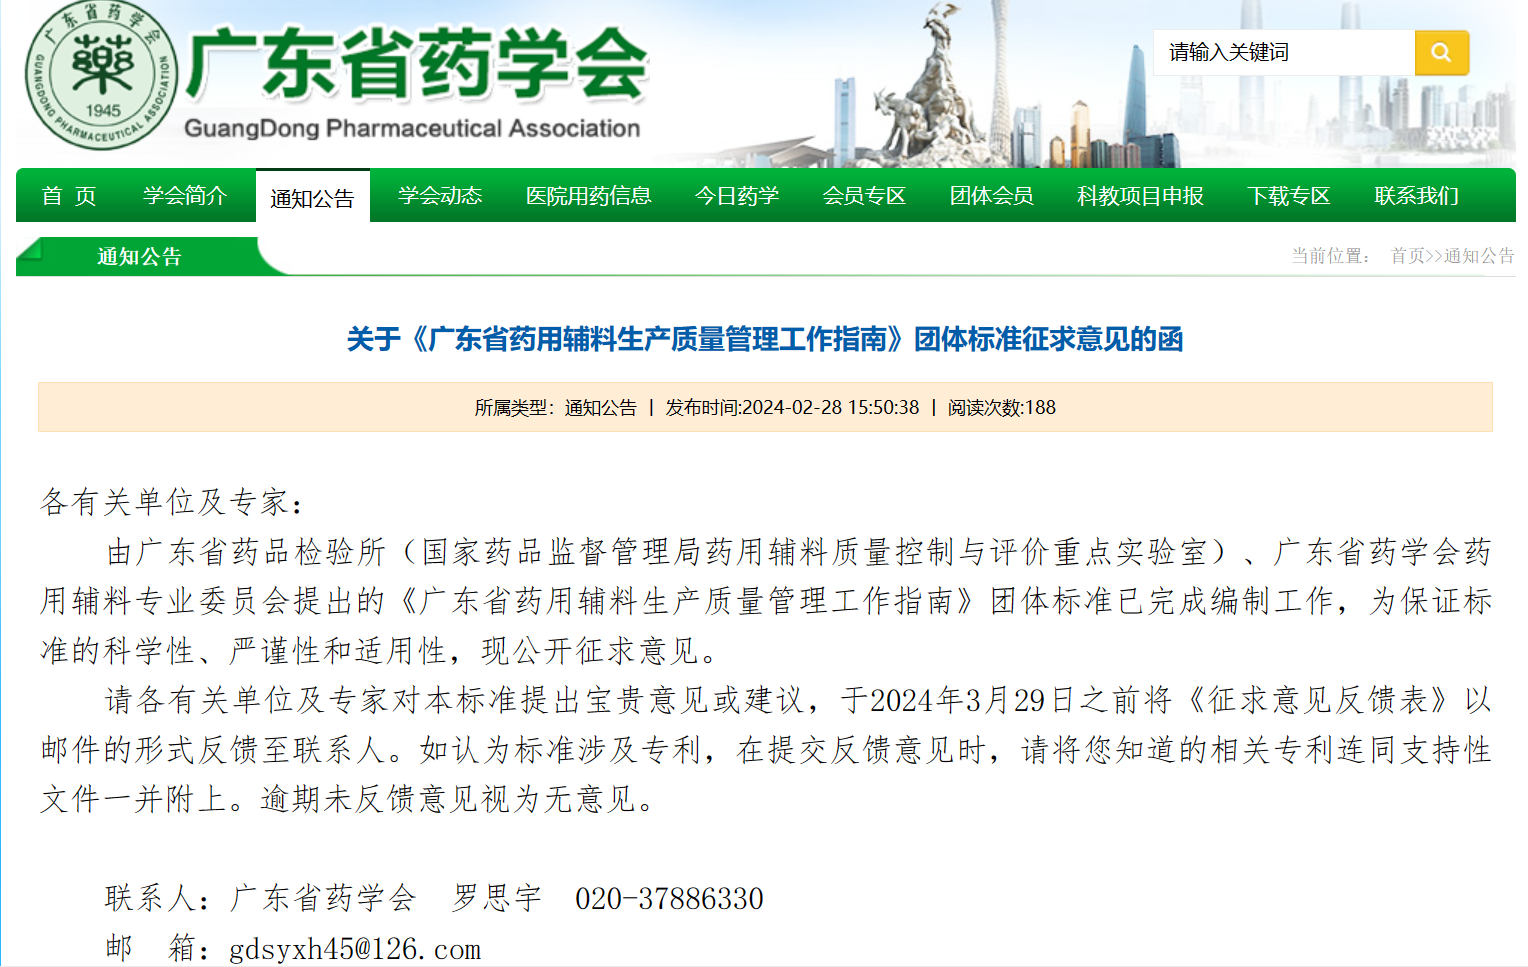 《广东省药用辅料生产质量管理工作指南》（征求意见稿）。